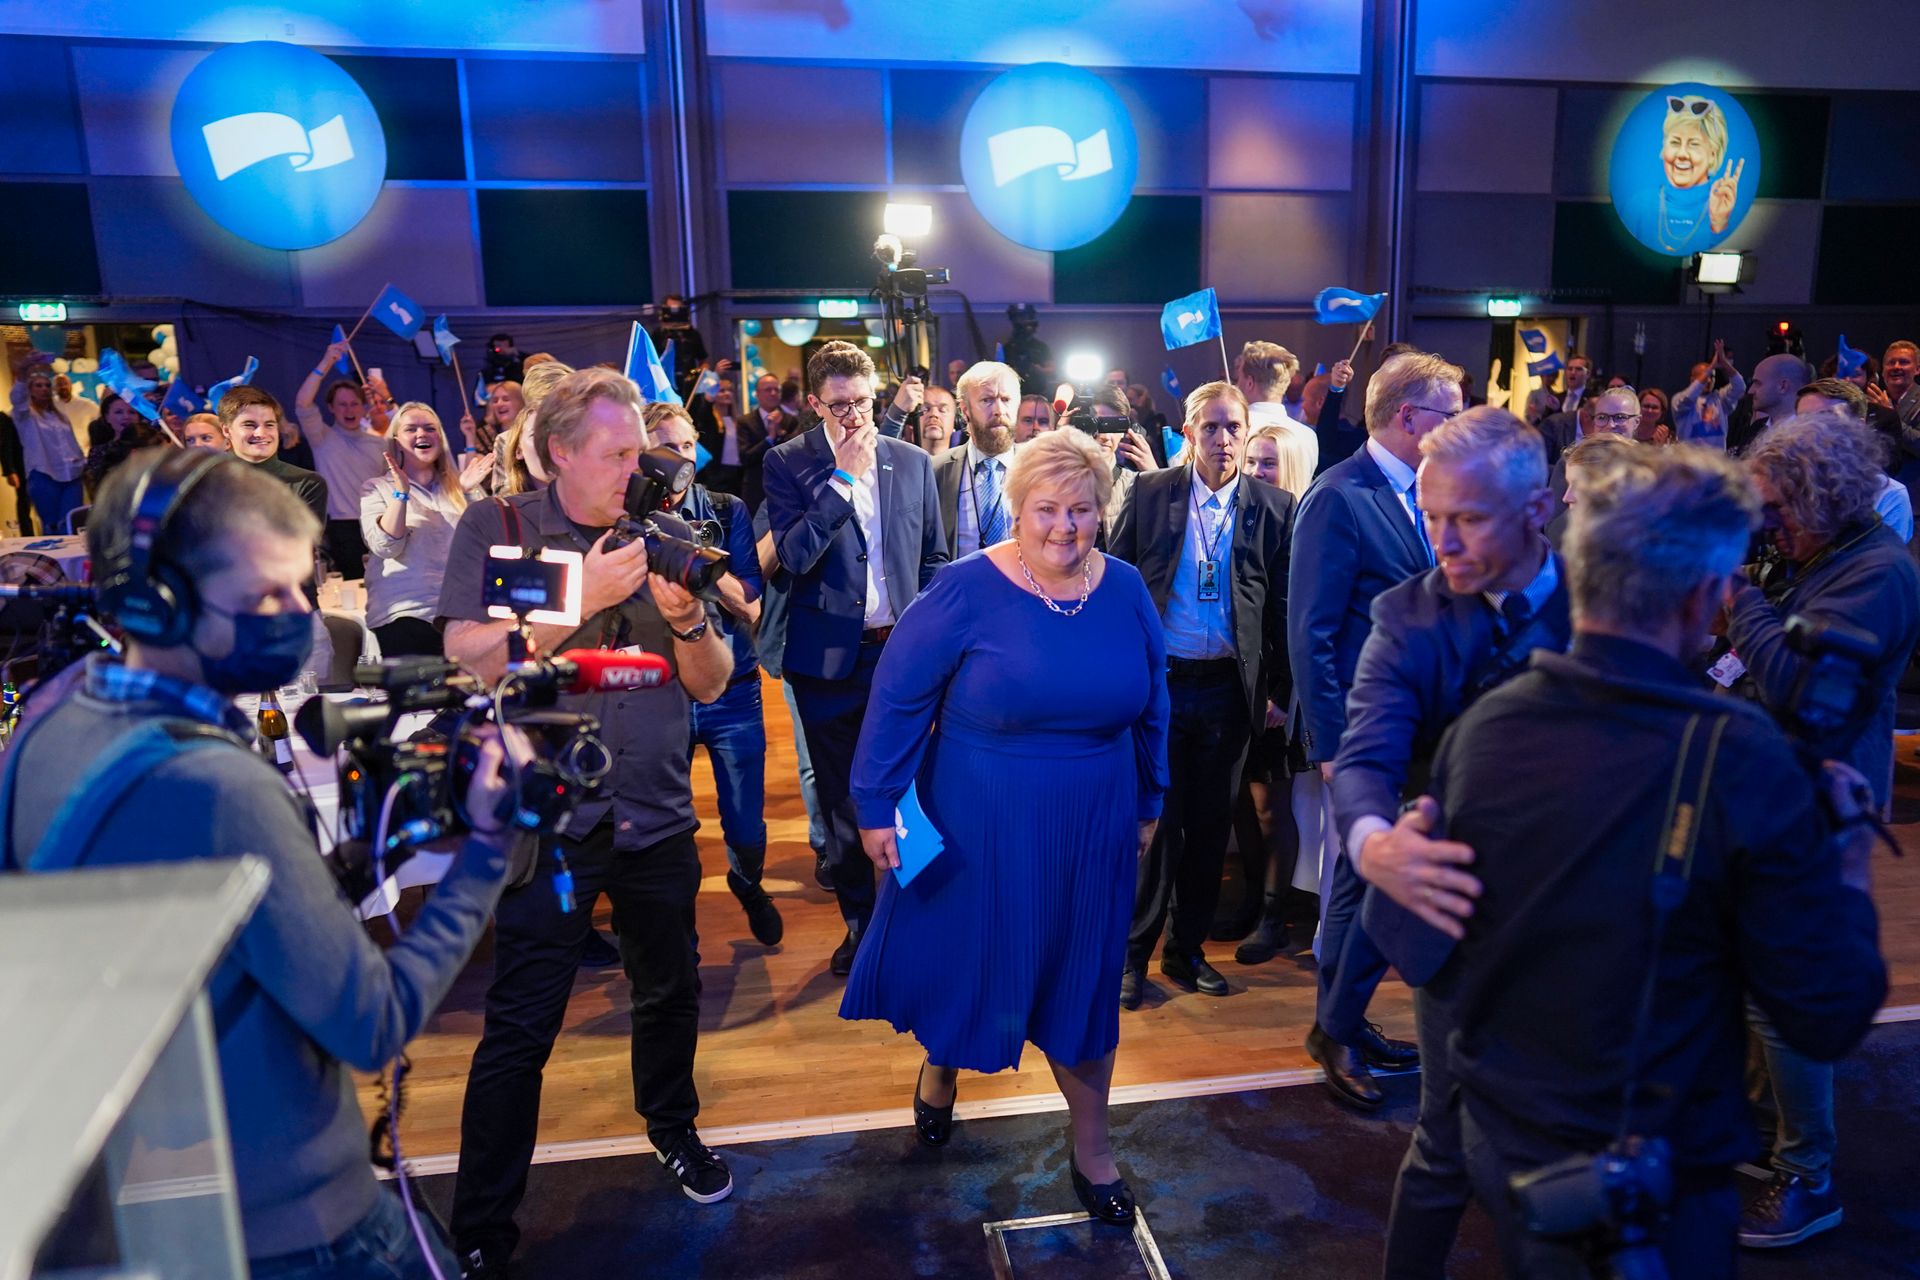 Erna står midt i bildet, omringet av fotografer og journalister som vil få en kommentar etter at hun gikk av talerstolen under Høyres valgvake. 